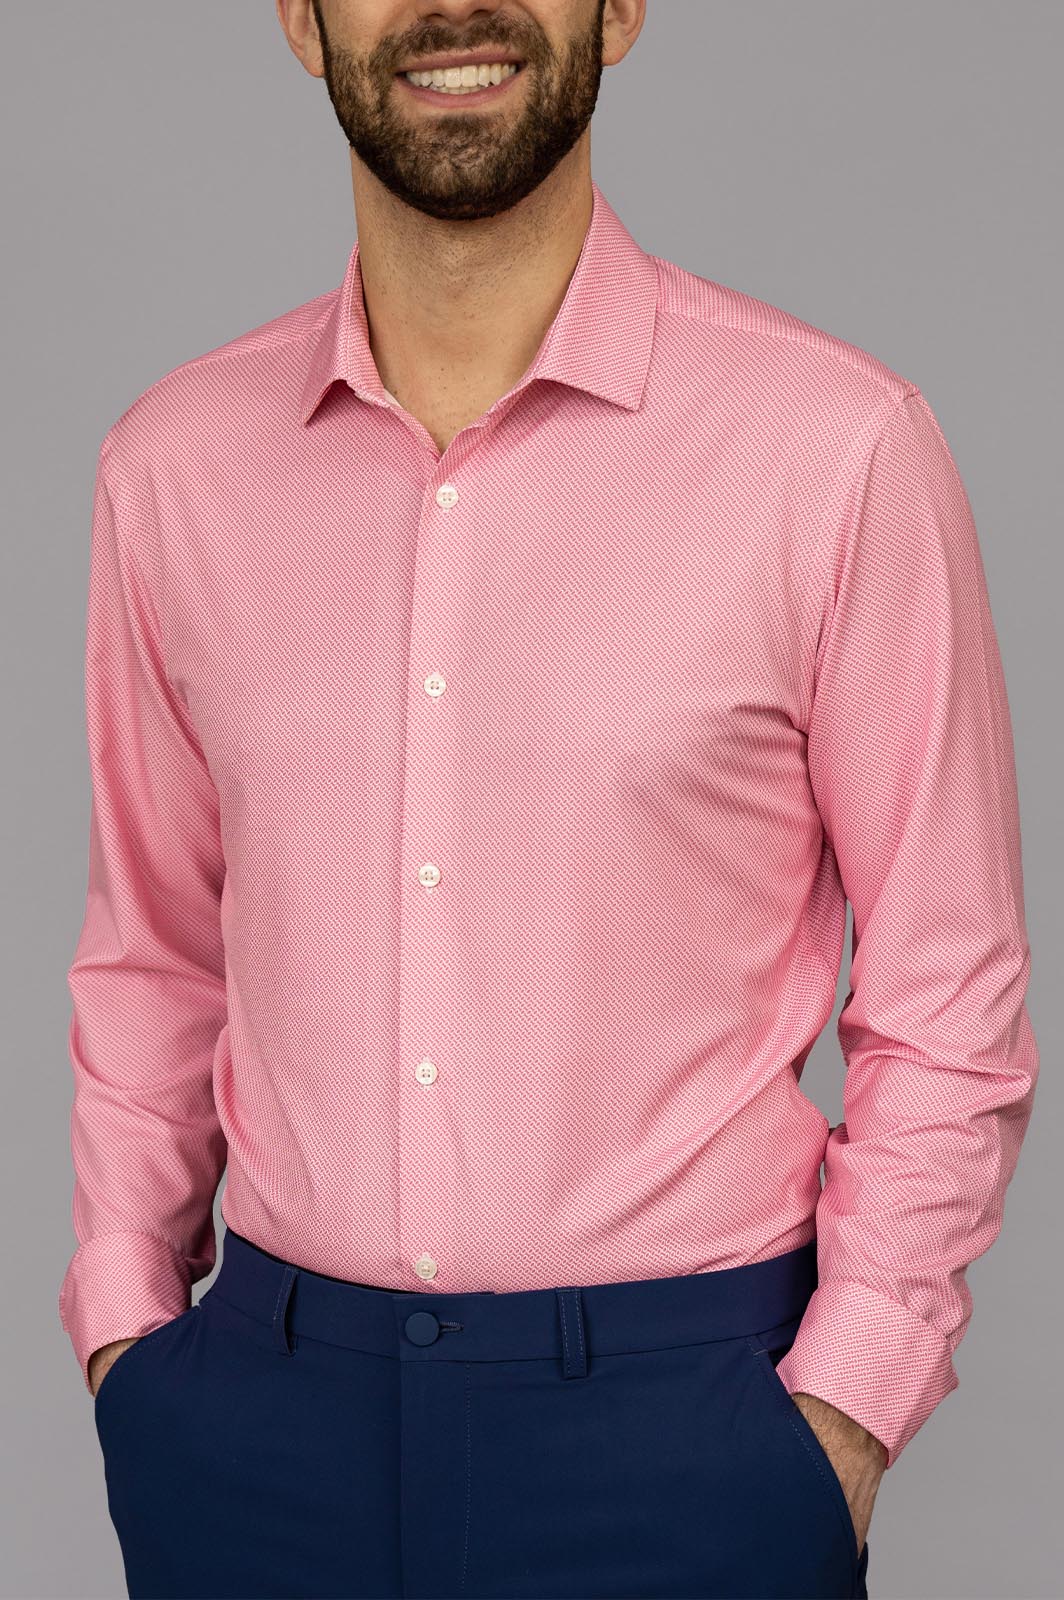 pink dress shirt